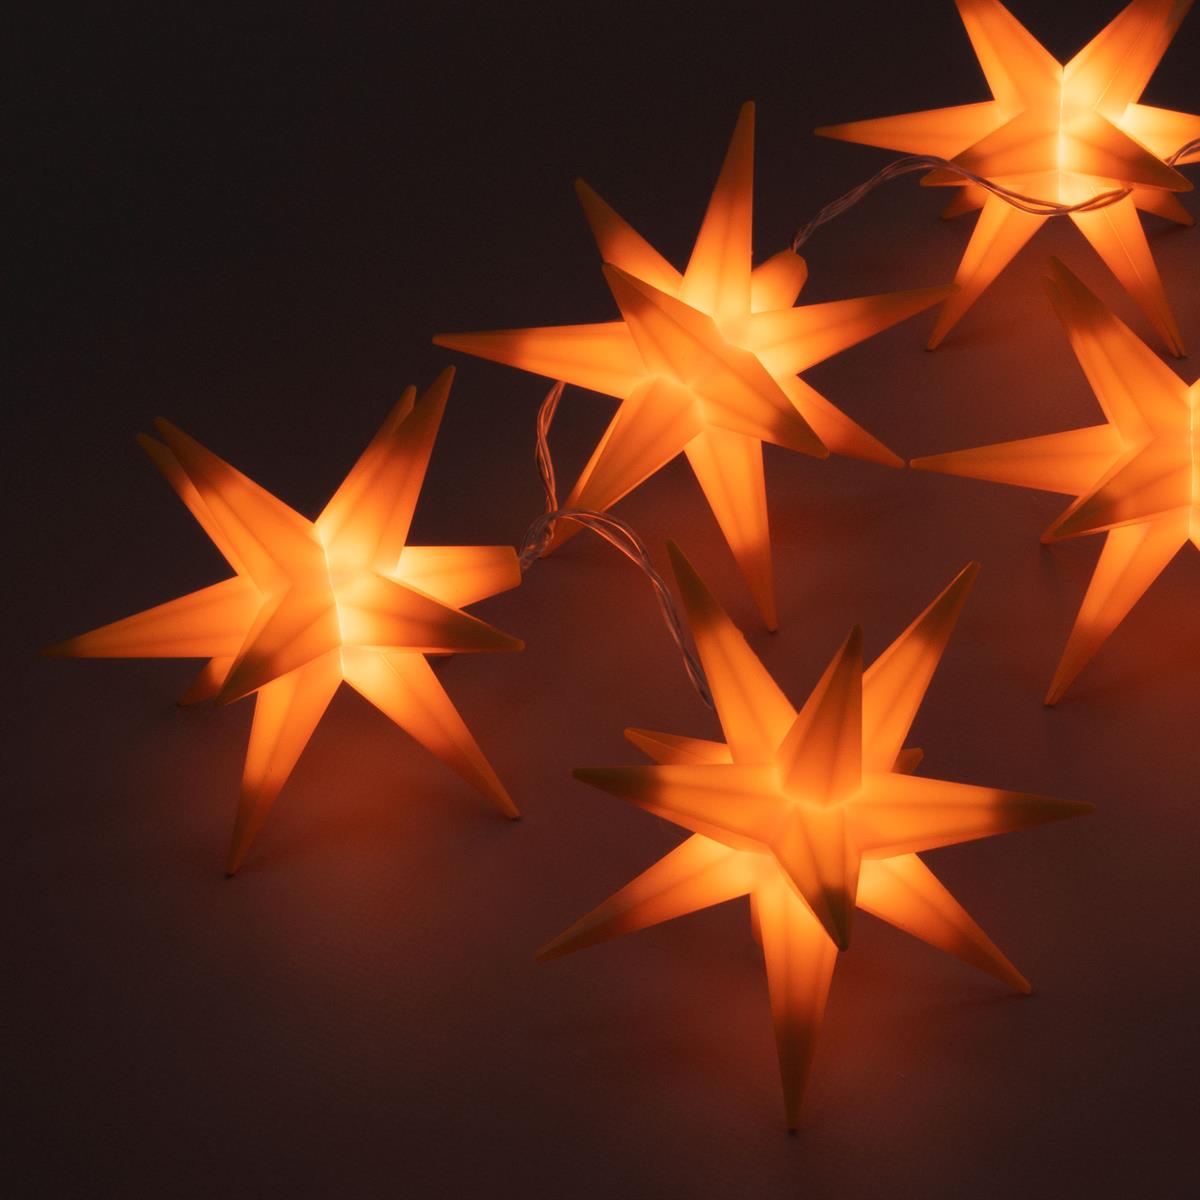 10 LED Lichterkette Weihnachts-Sterne orange Weihnachts-Deko Trafo Timer